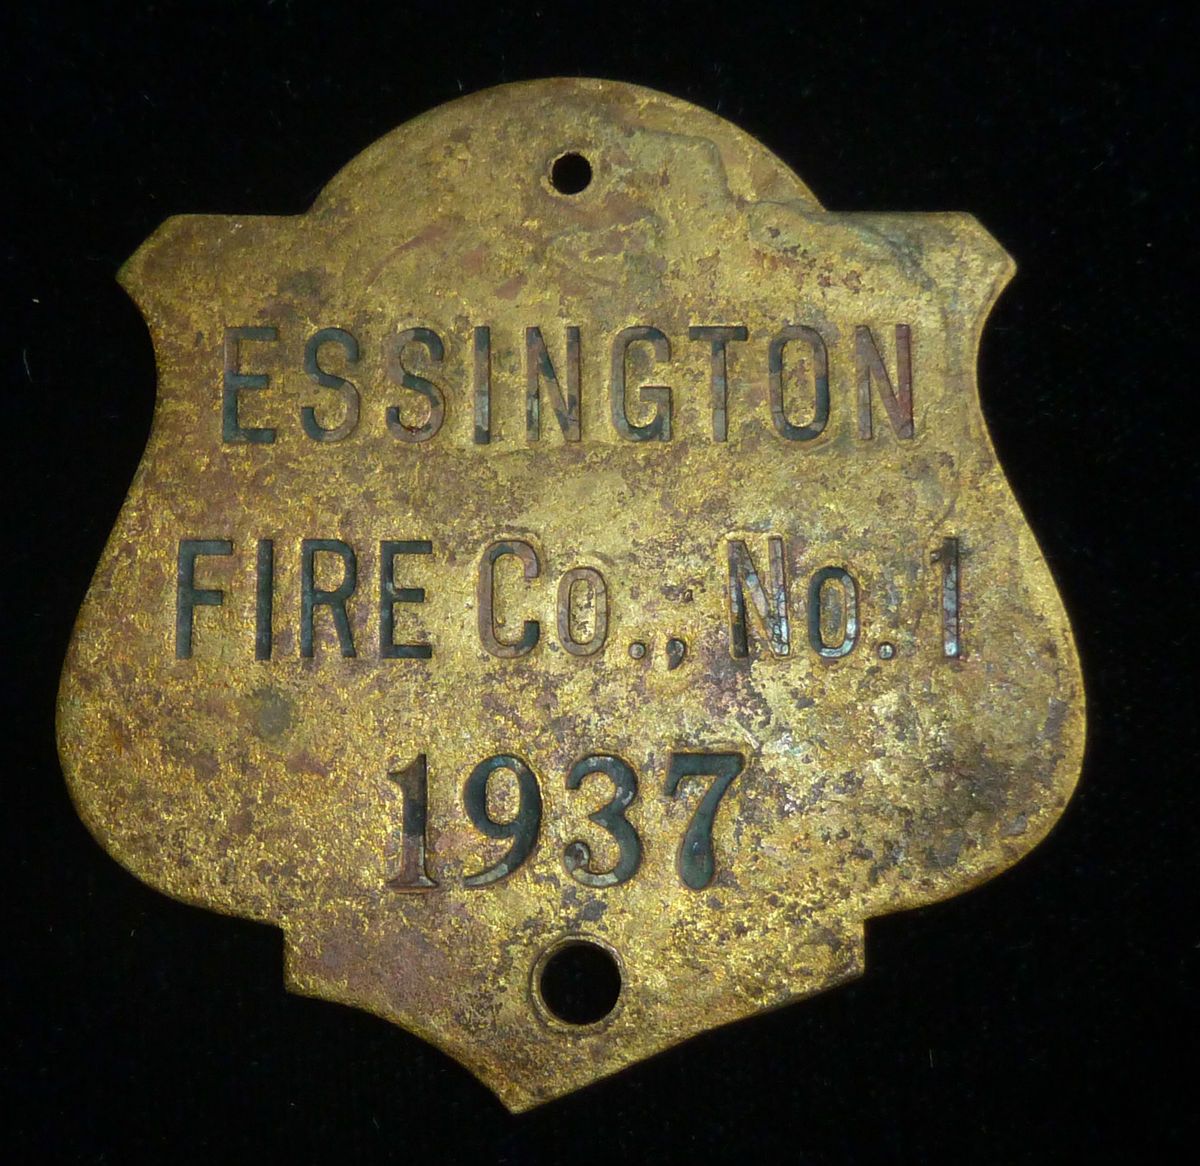 Antique Obsolete Essington Fire Co No 1 1937 Fire Department Badge